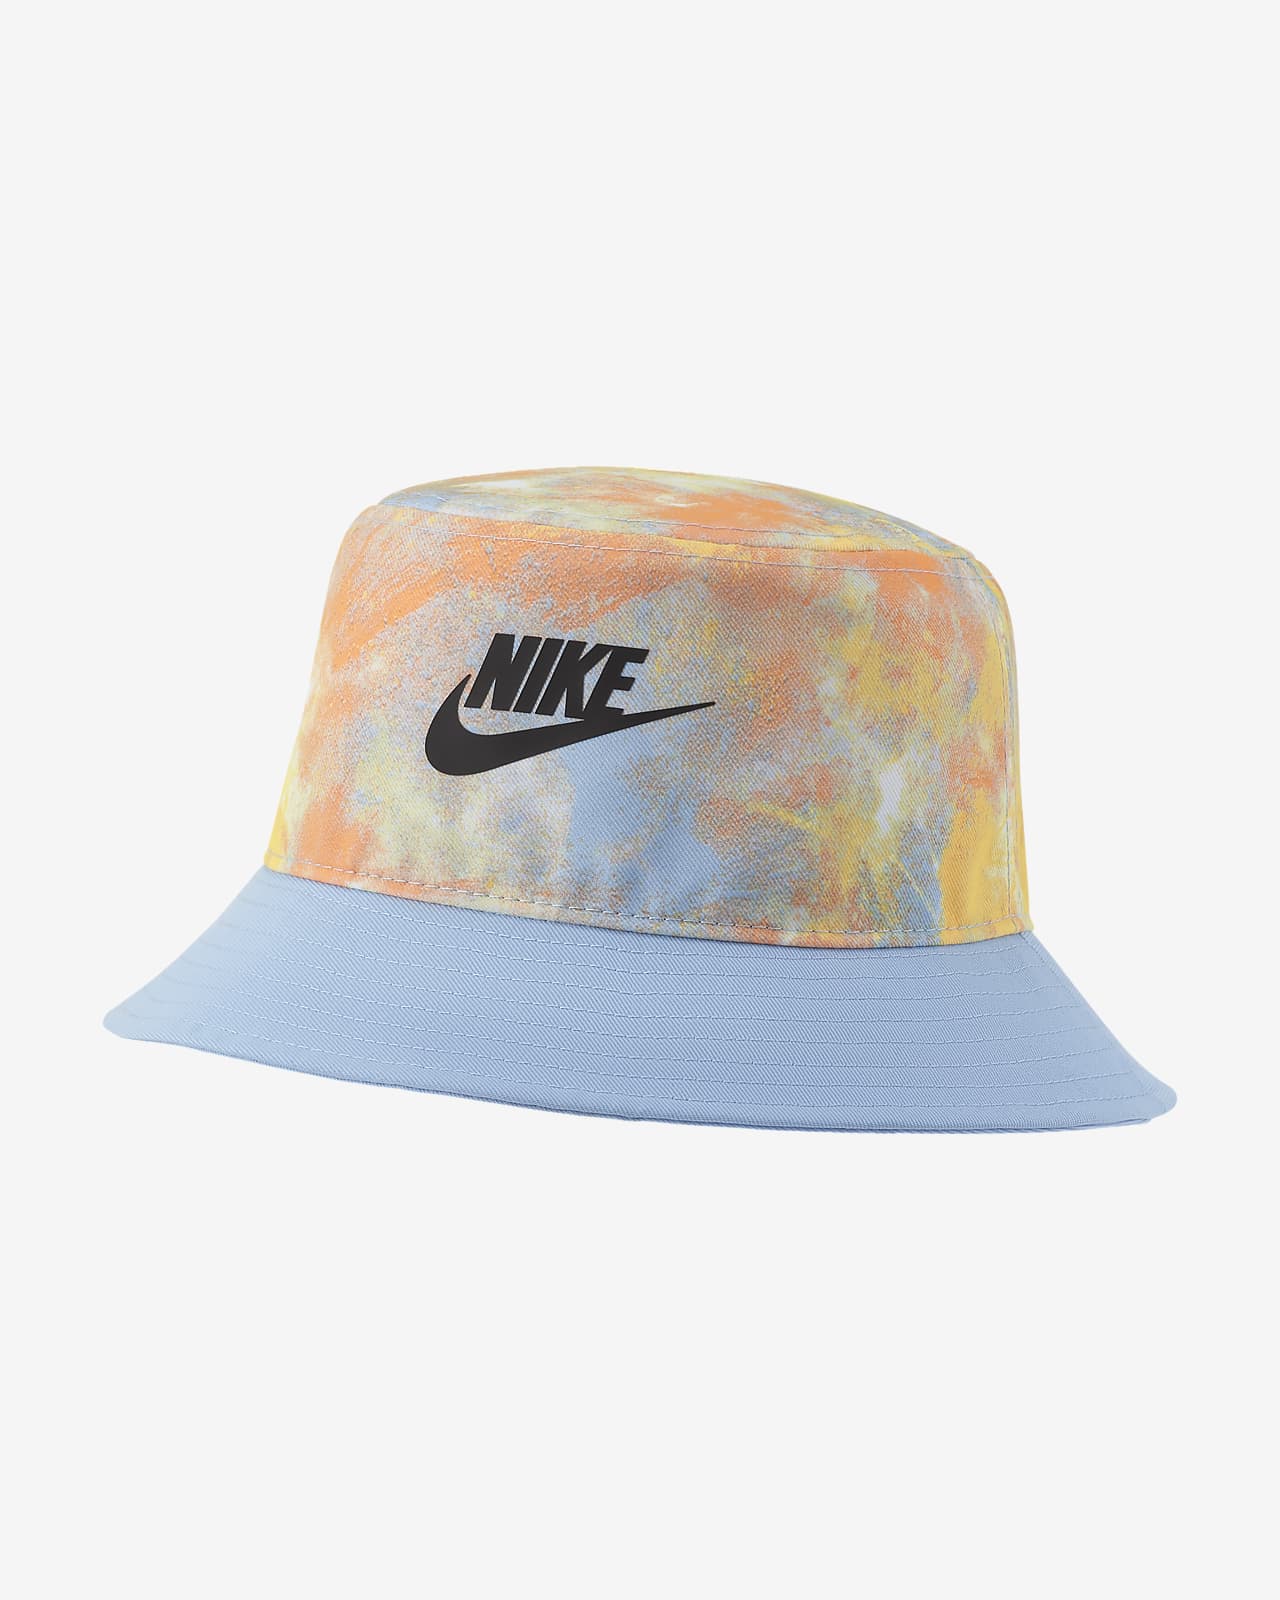 Nike Older Kids' Tie-Dye Bucket Hat